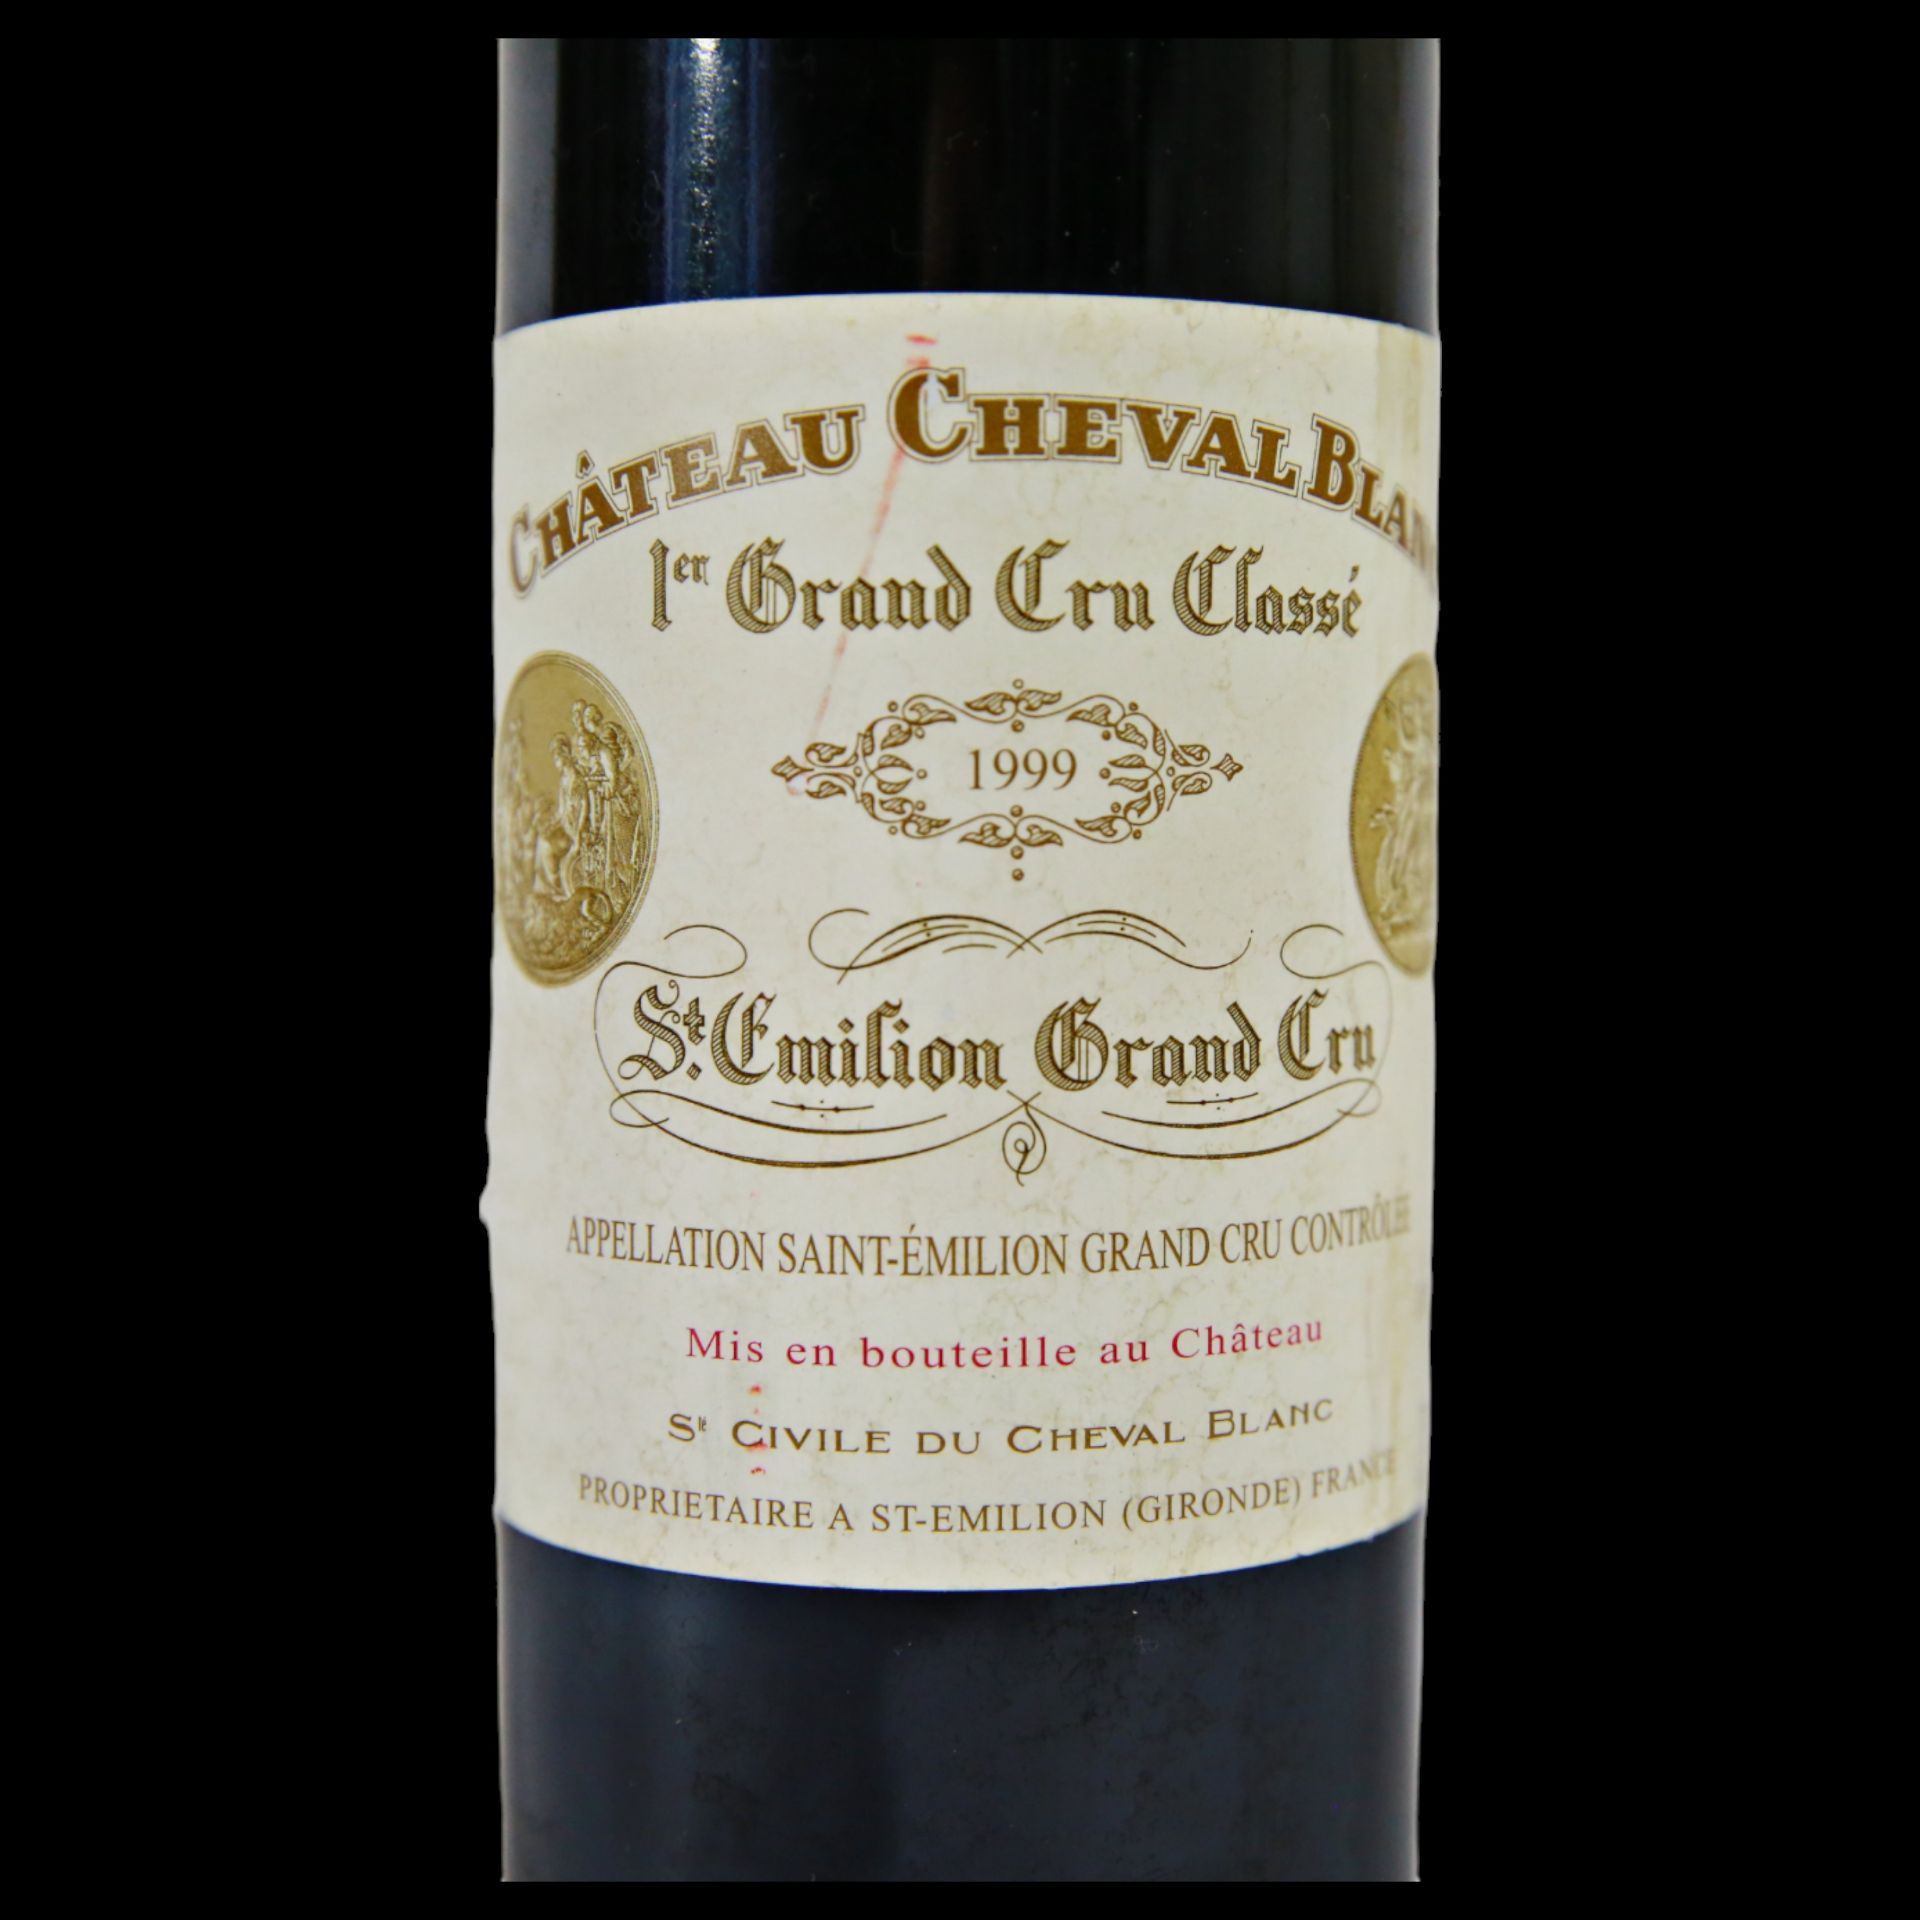 Bottle Vintage Chateau Cheval Blanc 1999, Bordeaux, Saint-Emilion Premier Grand Cru Classe. - Bild 7 aus 15